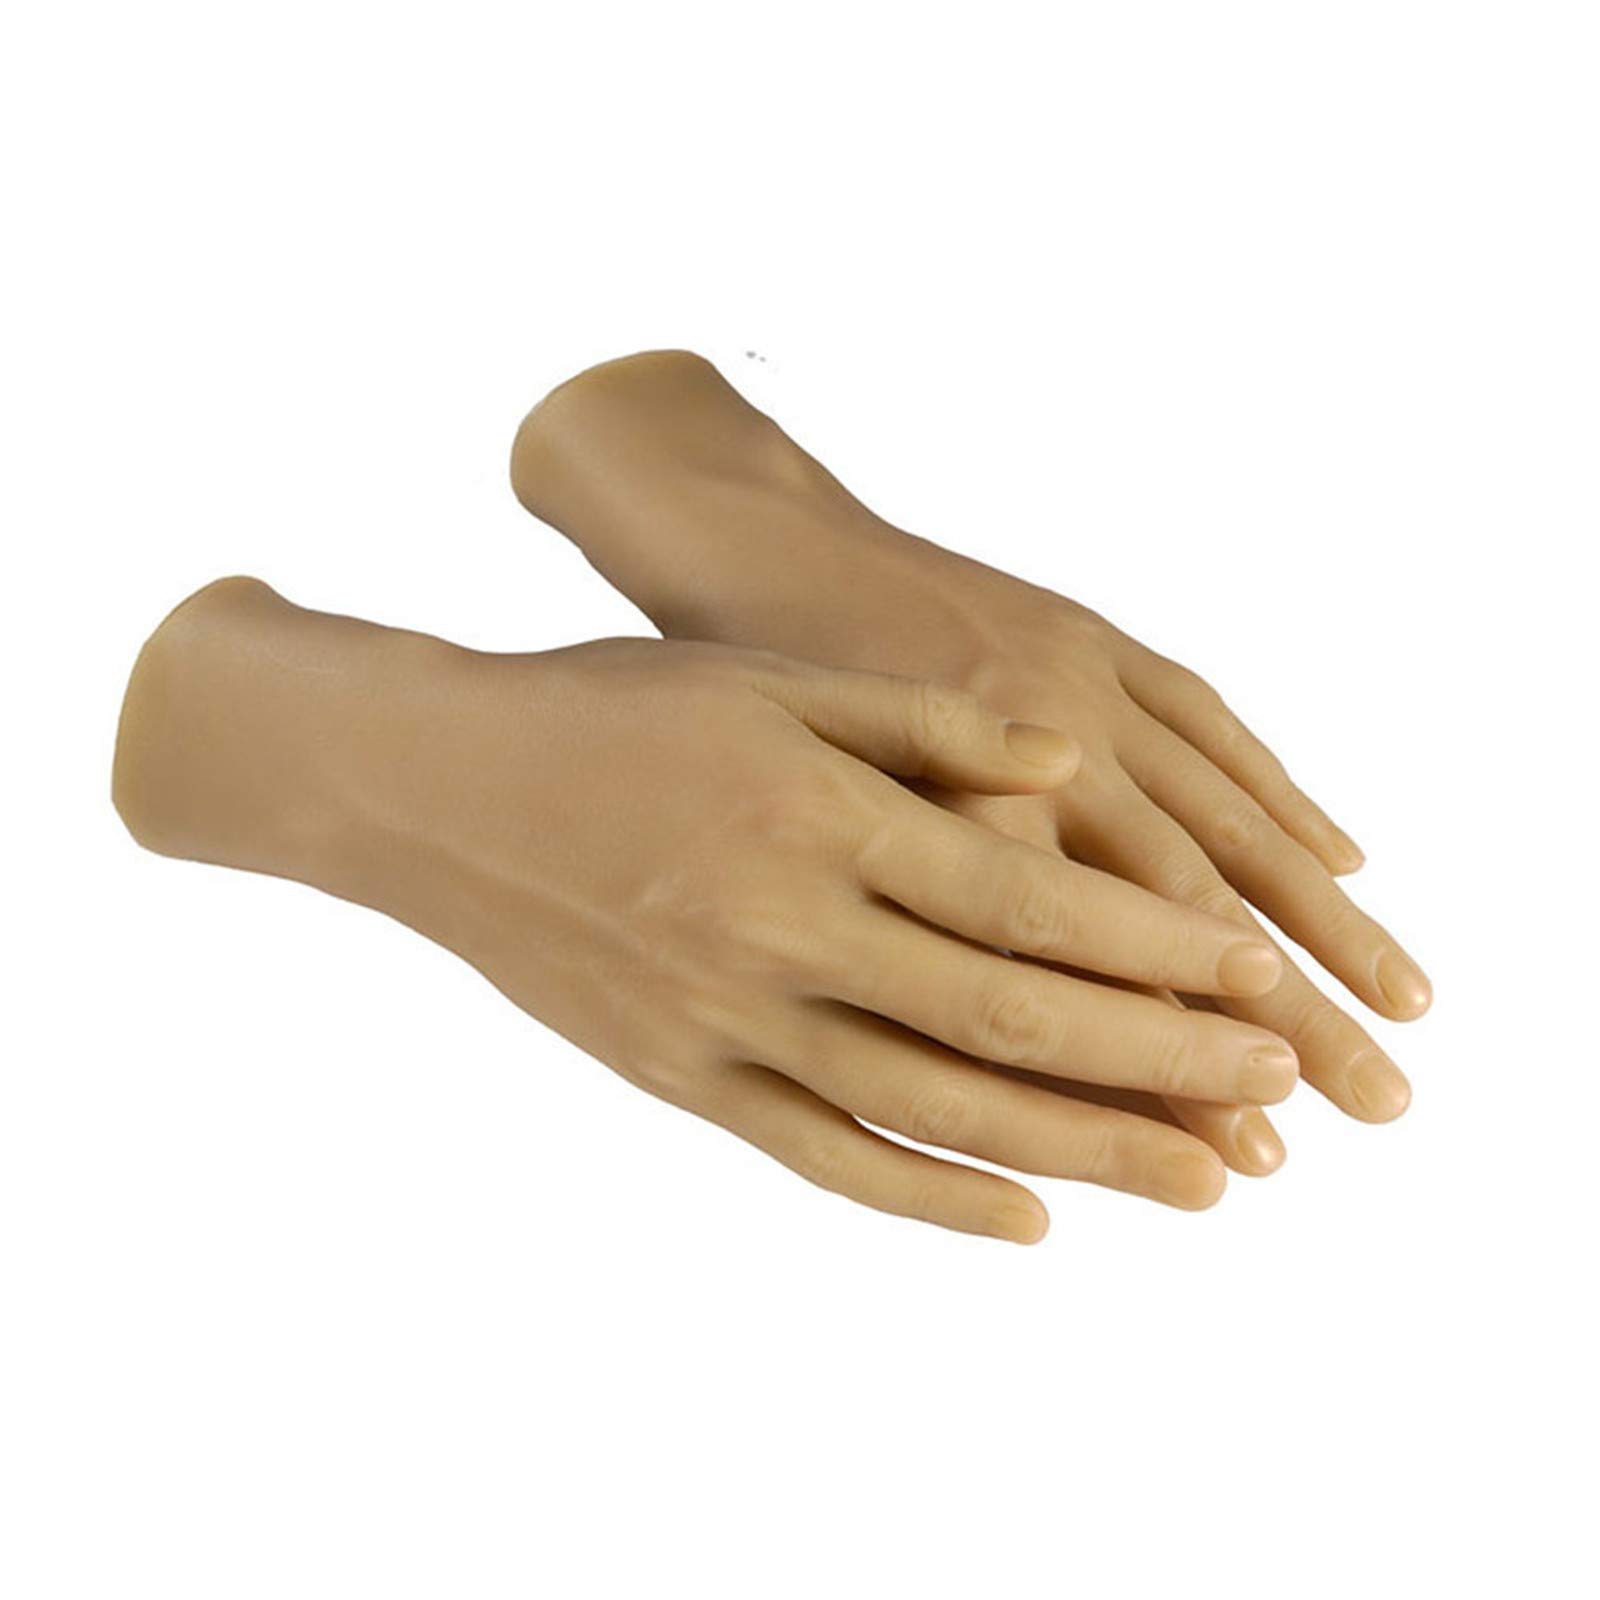 1 Paar Silikon-Hand, Weibliche Schaufensterpuppe Hand Finger- und Handgelenkspositionierung mit Knochen, Textur und visuell lebensechter weizenfarbener weiblicher Modellhand,A left hand